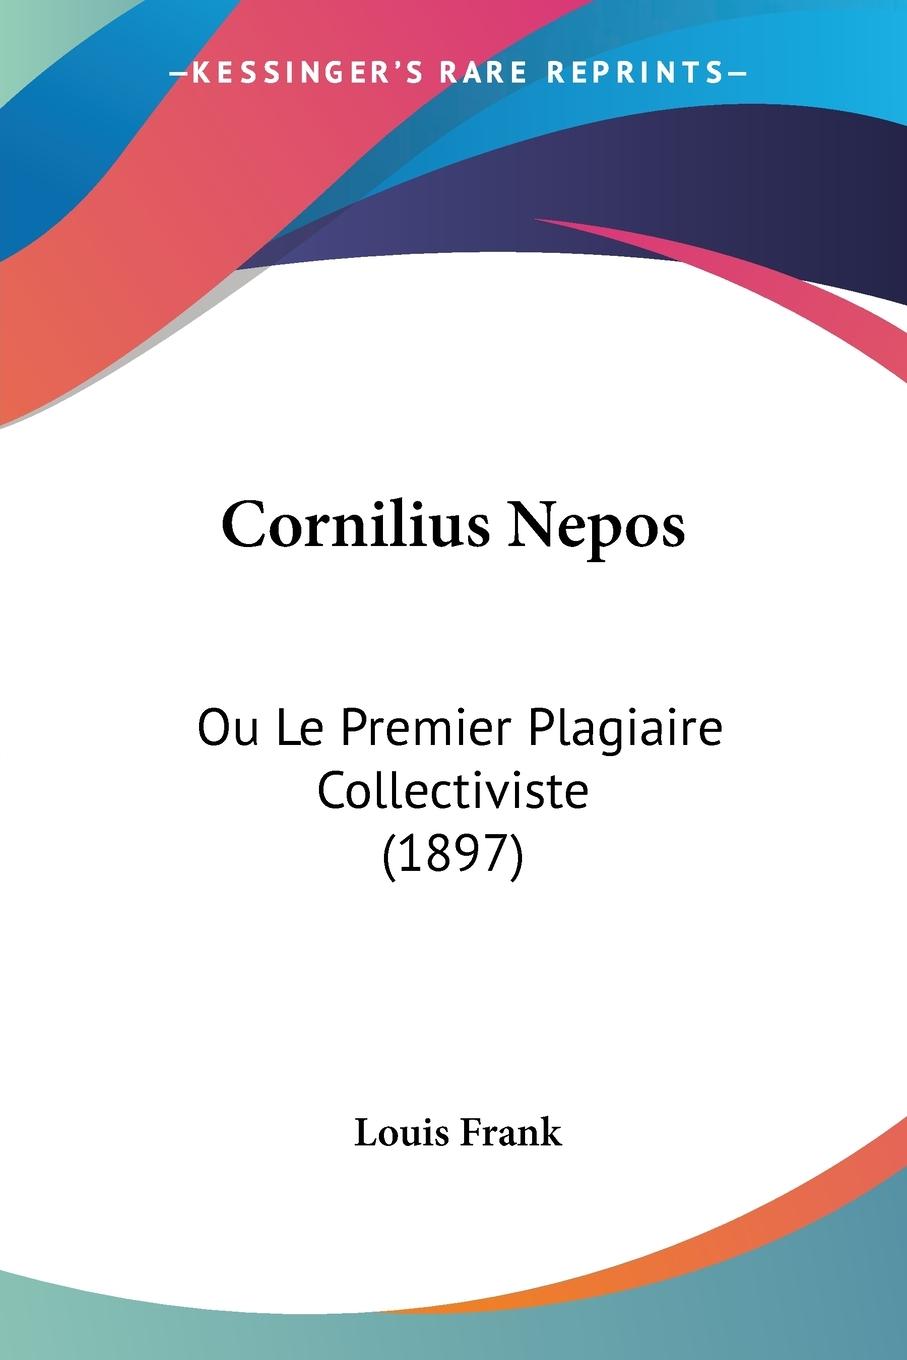 Cornilius Nepos - Frank, Louis